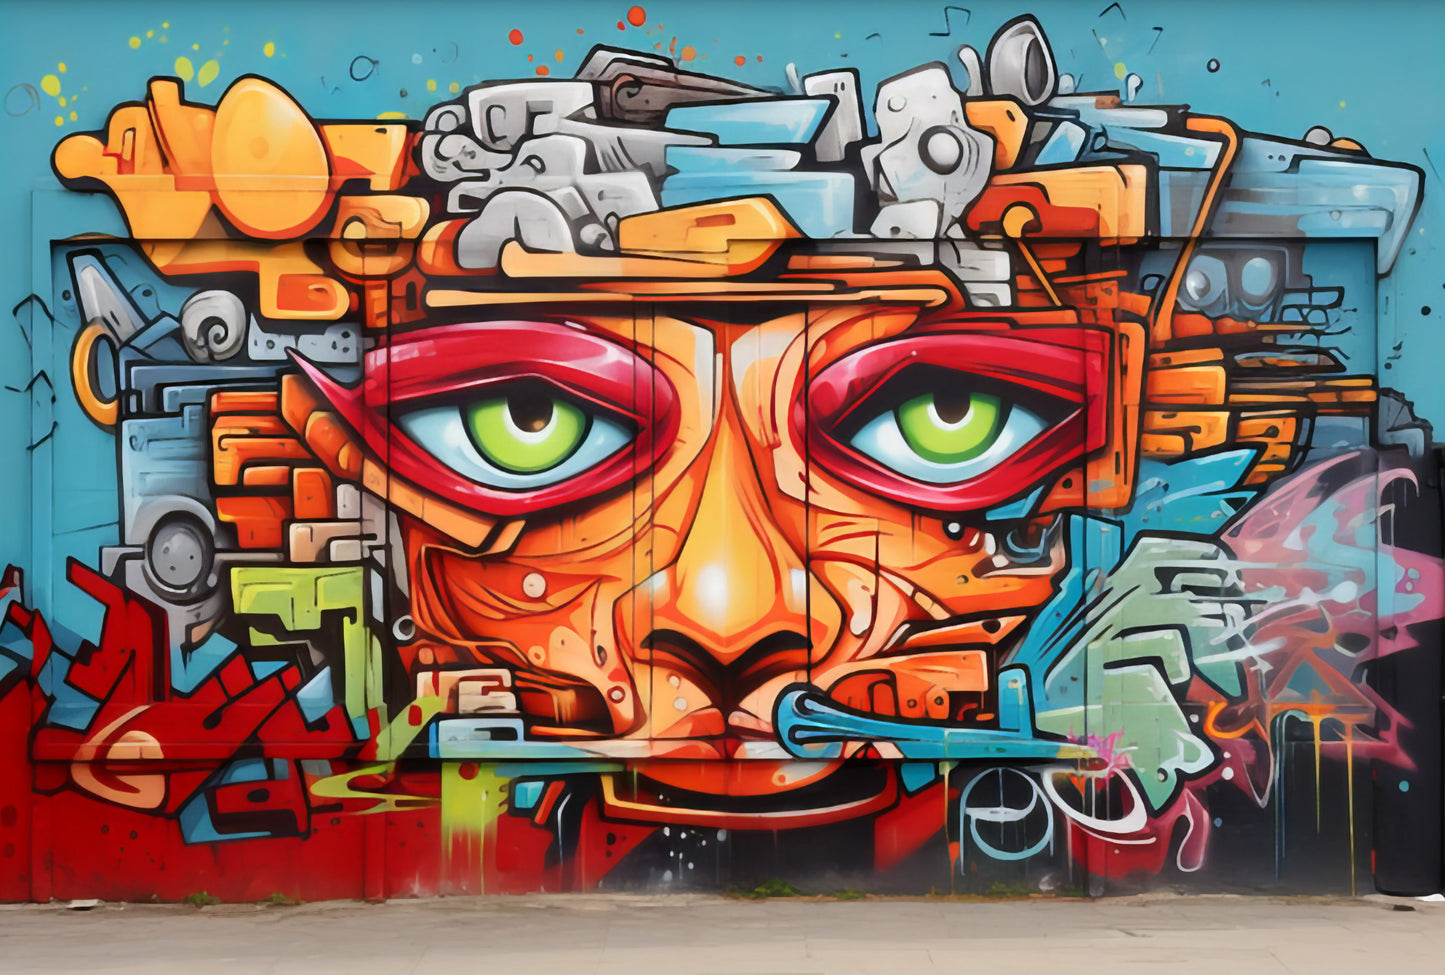 Graffiti 001 - Full Wall Mural